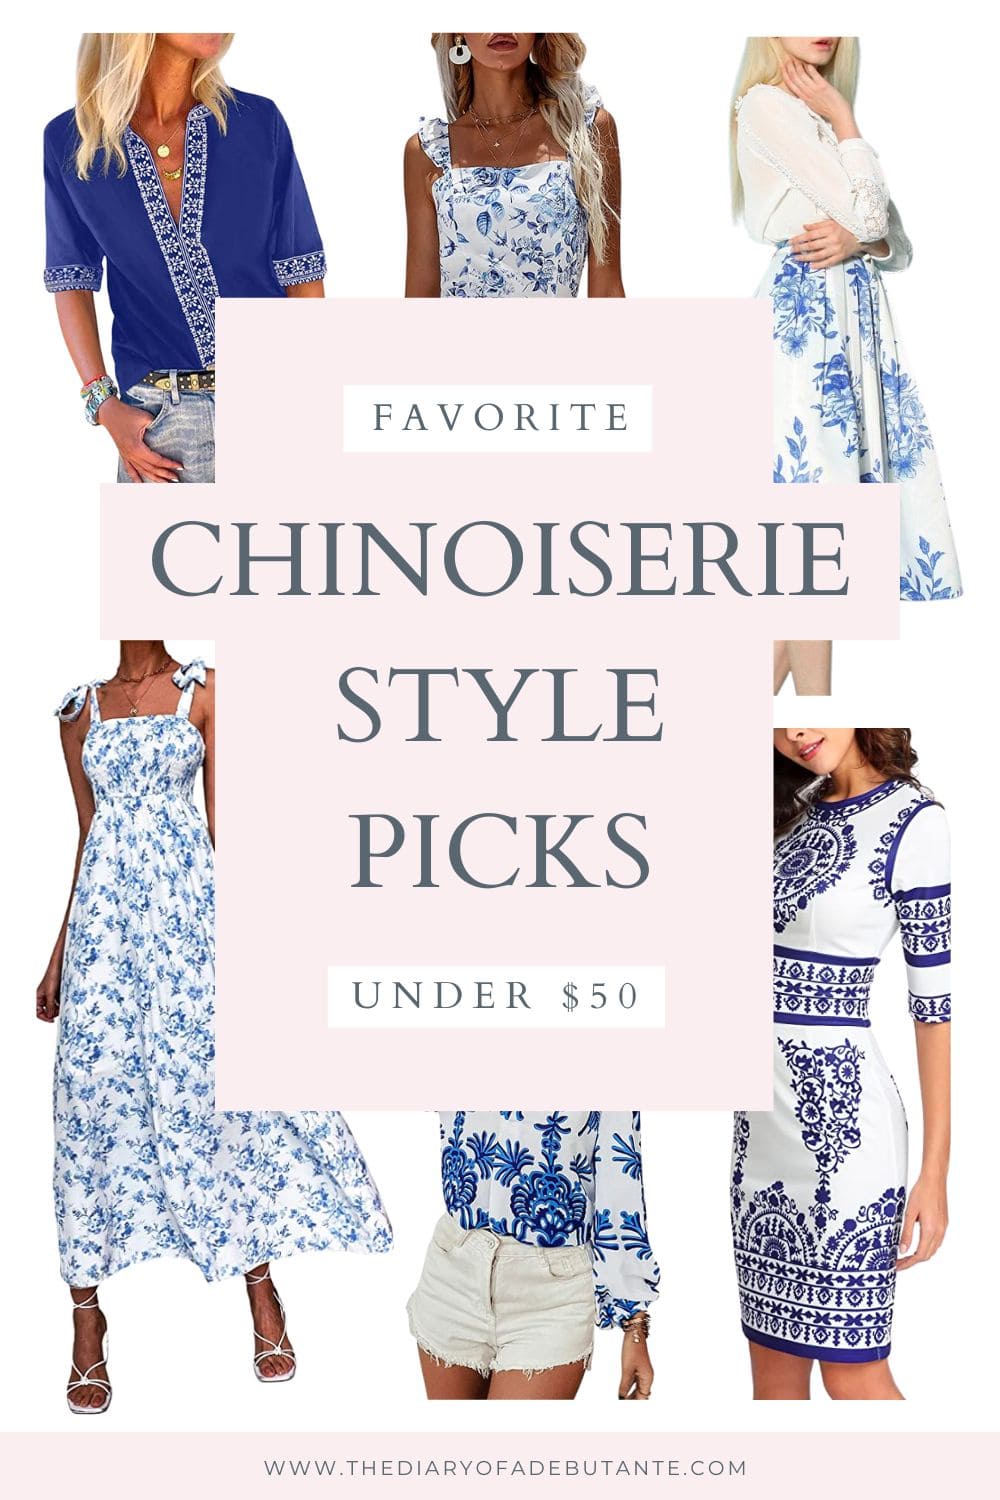 La blogueuse abordable Stephanie Zyazhka a partagé neuf idées de tenues de chinoiseries bleues et blanches dans Journal d'une débutante.